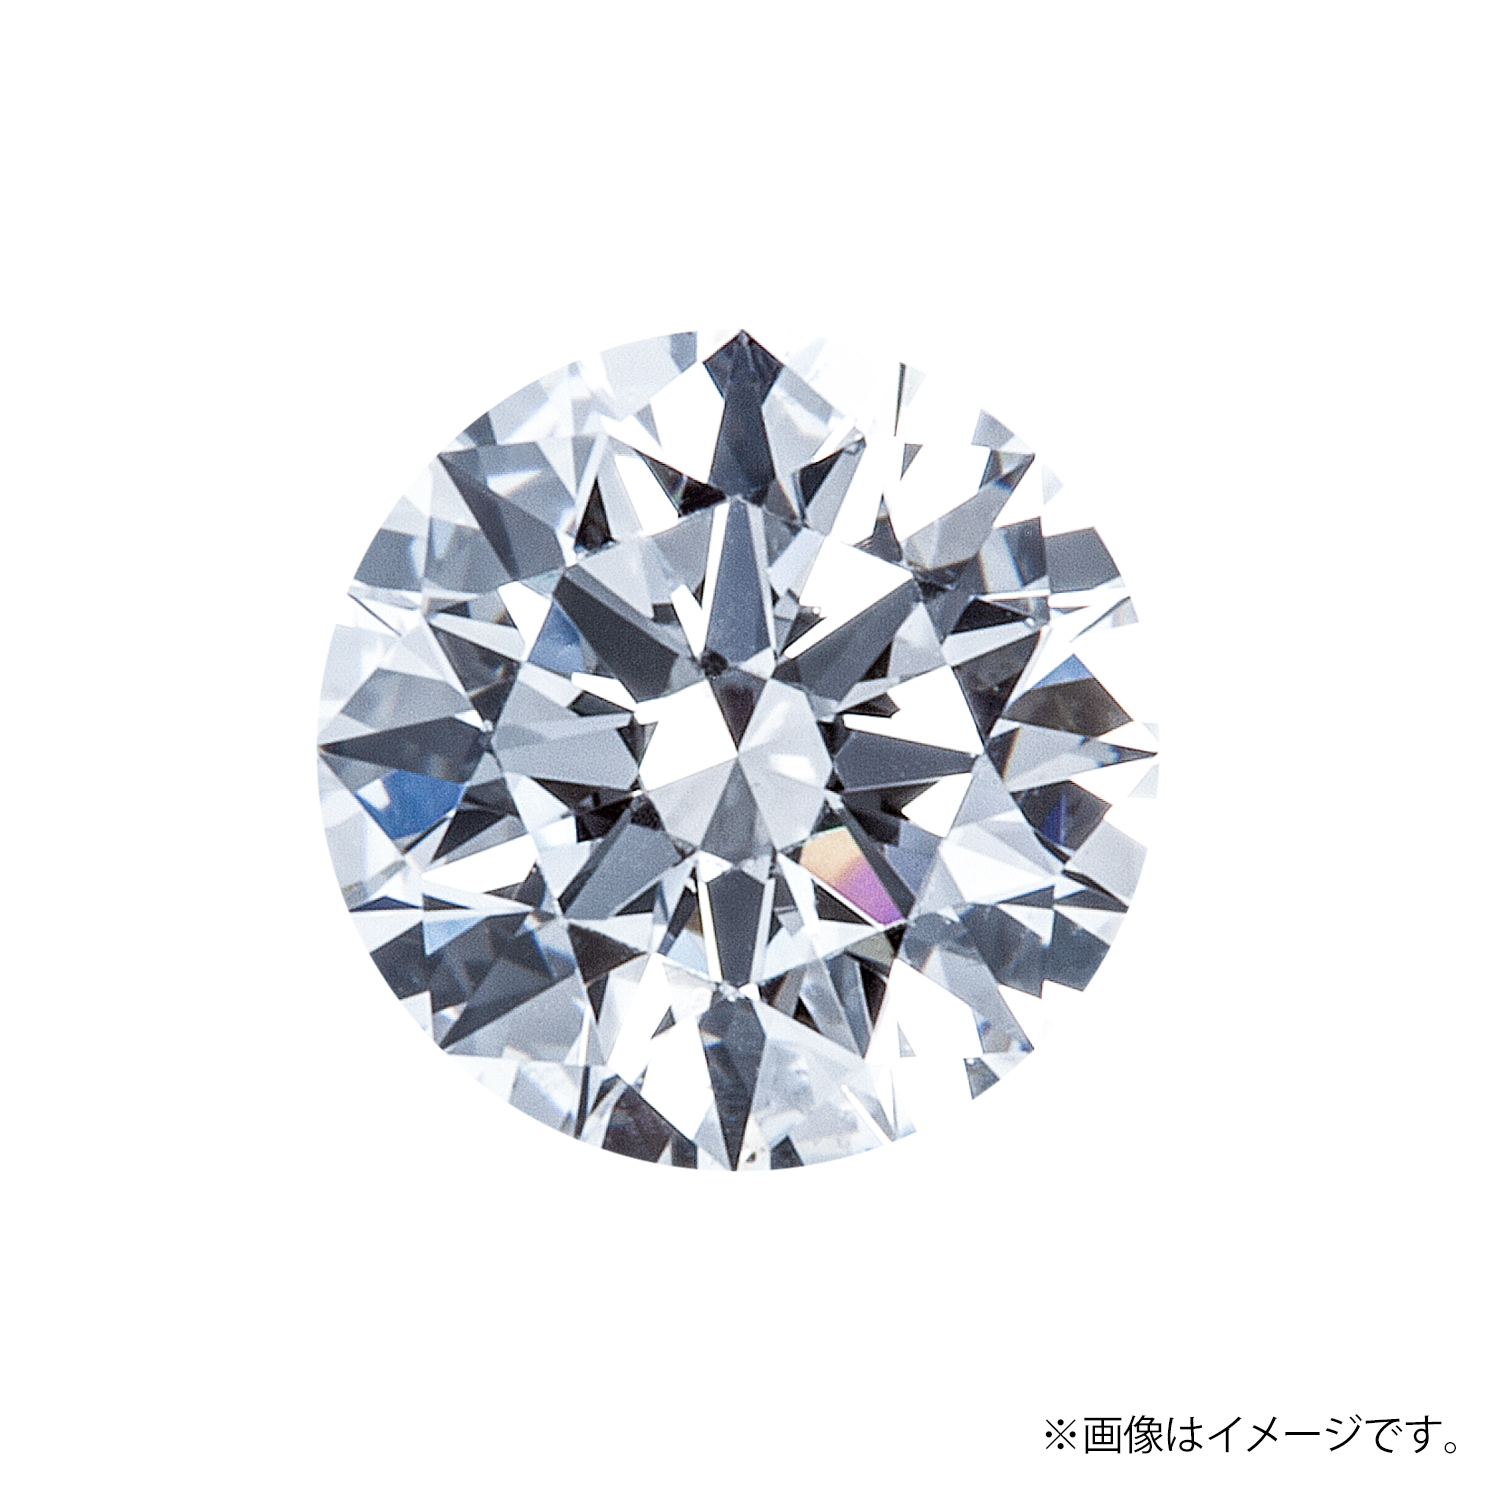 0.308ct Round ダイヤモンド / D / IF / 3EX-H&C